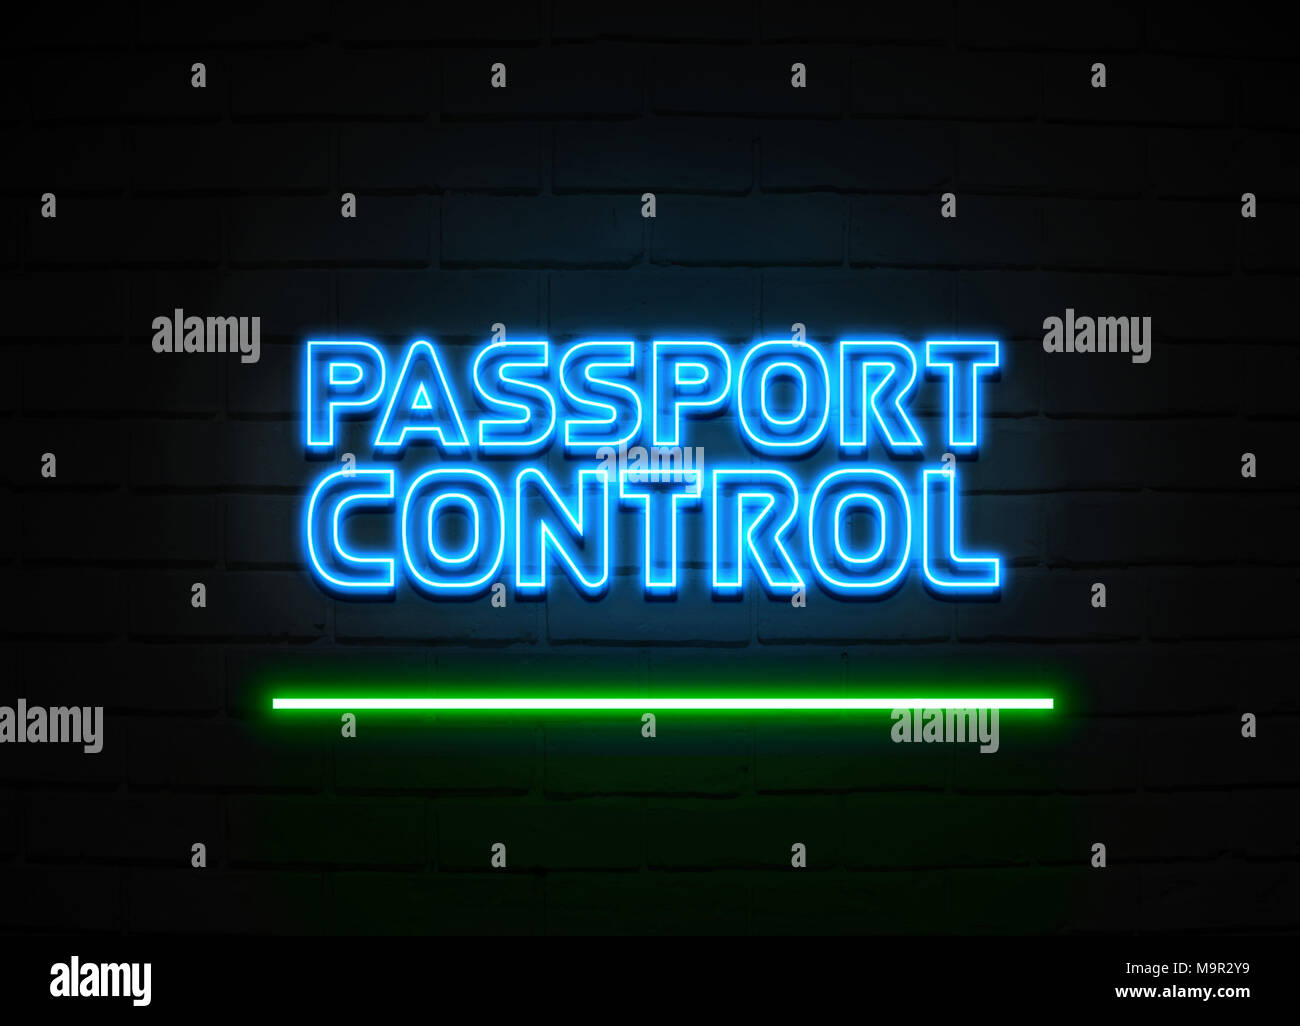 Passkontrolle Leuchtreklame - glühende Leuchtreklame auf brickwall Wand - 3D-Royalty Free Stock Illustration dargestellt. Stockfoto